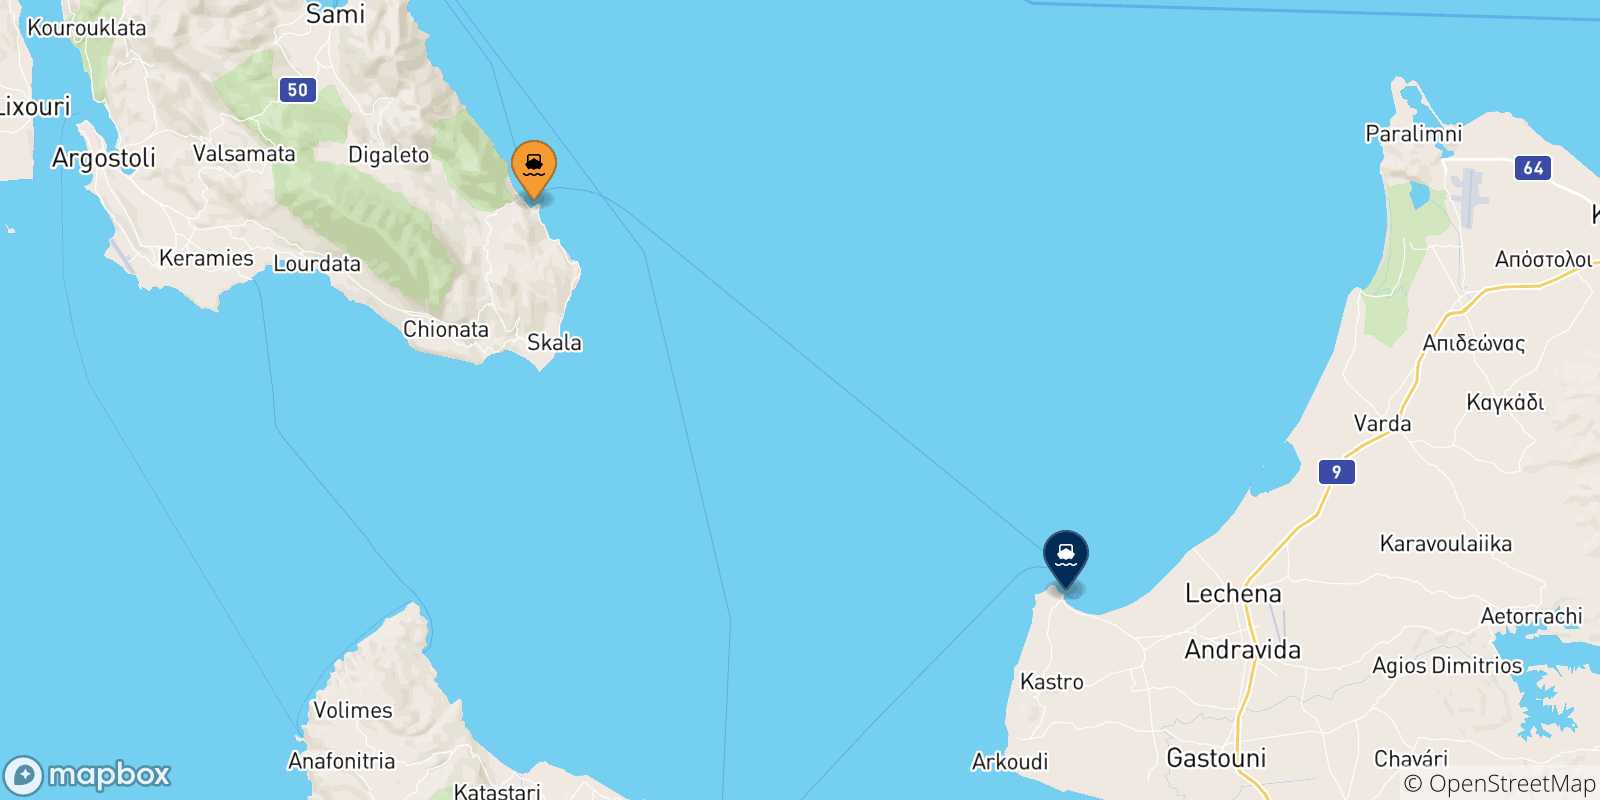 Mappa delle possibili rotte tra Poros (Cefalonia) e la Grecia